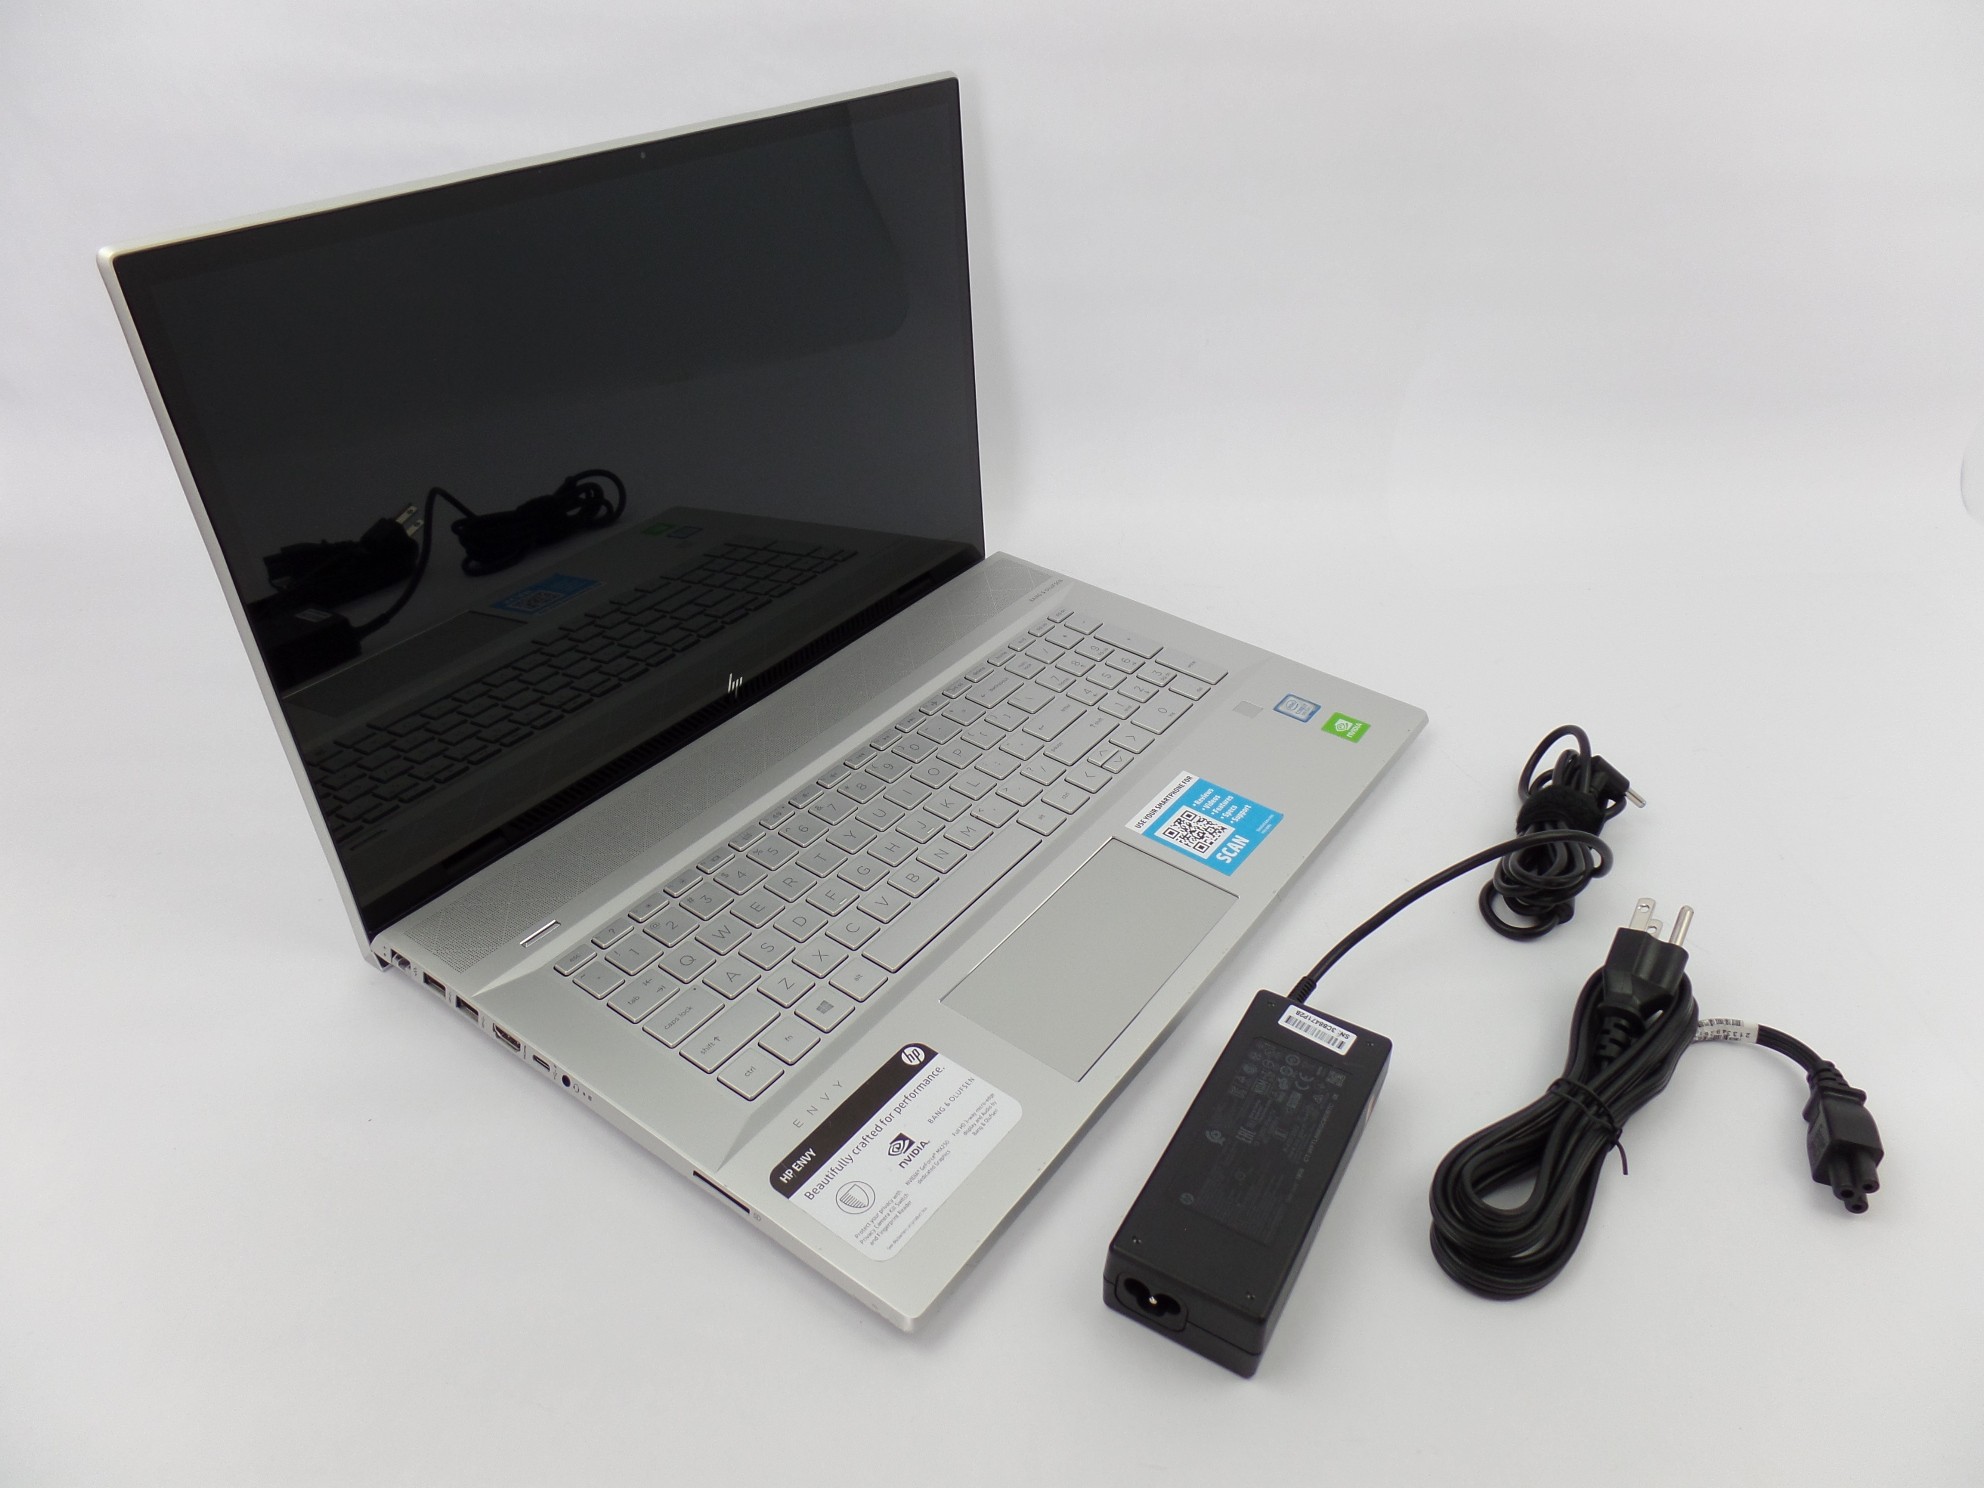 HP ENVY 17m-ce0013dx 17.3" FHD Touch i7-8565U 12GB 512GB SSD MX250 W10H Laptop U